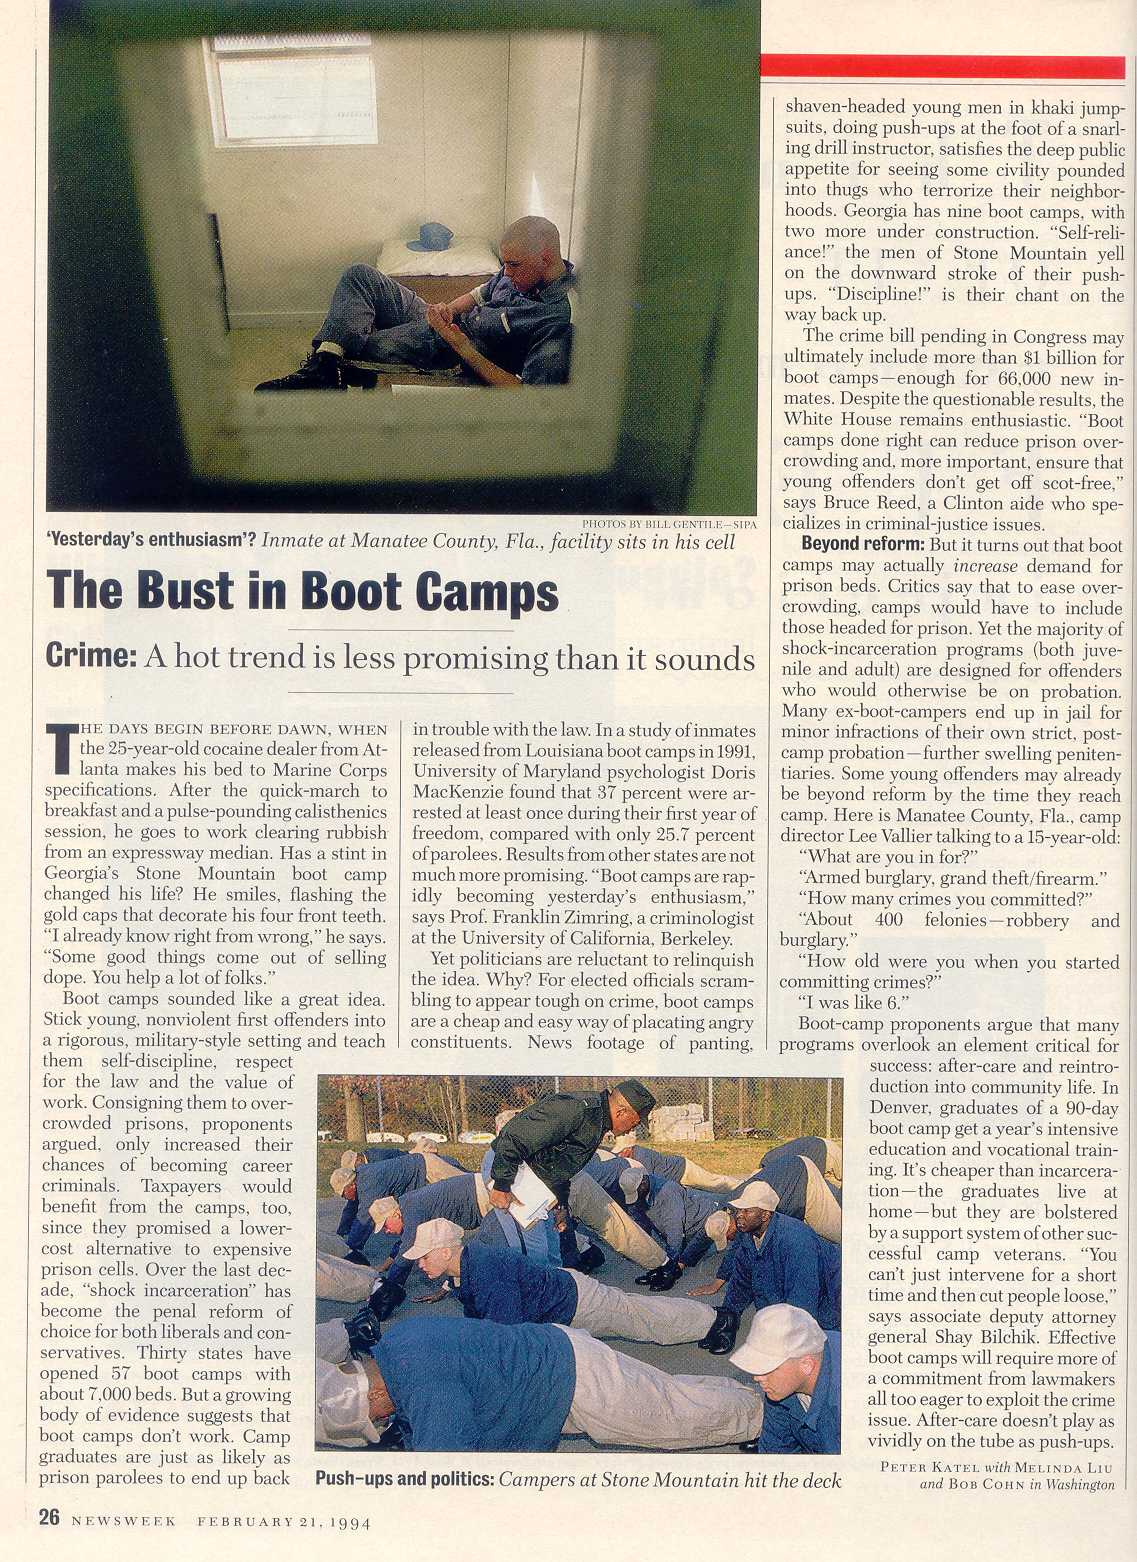 Peter Katel in Washington – NEWSWEEK Magazine (1994)